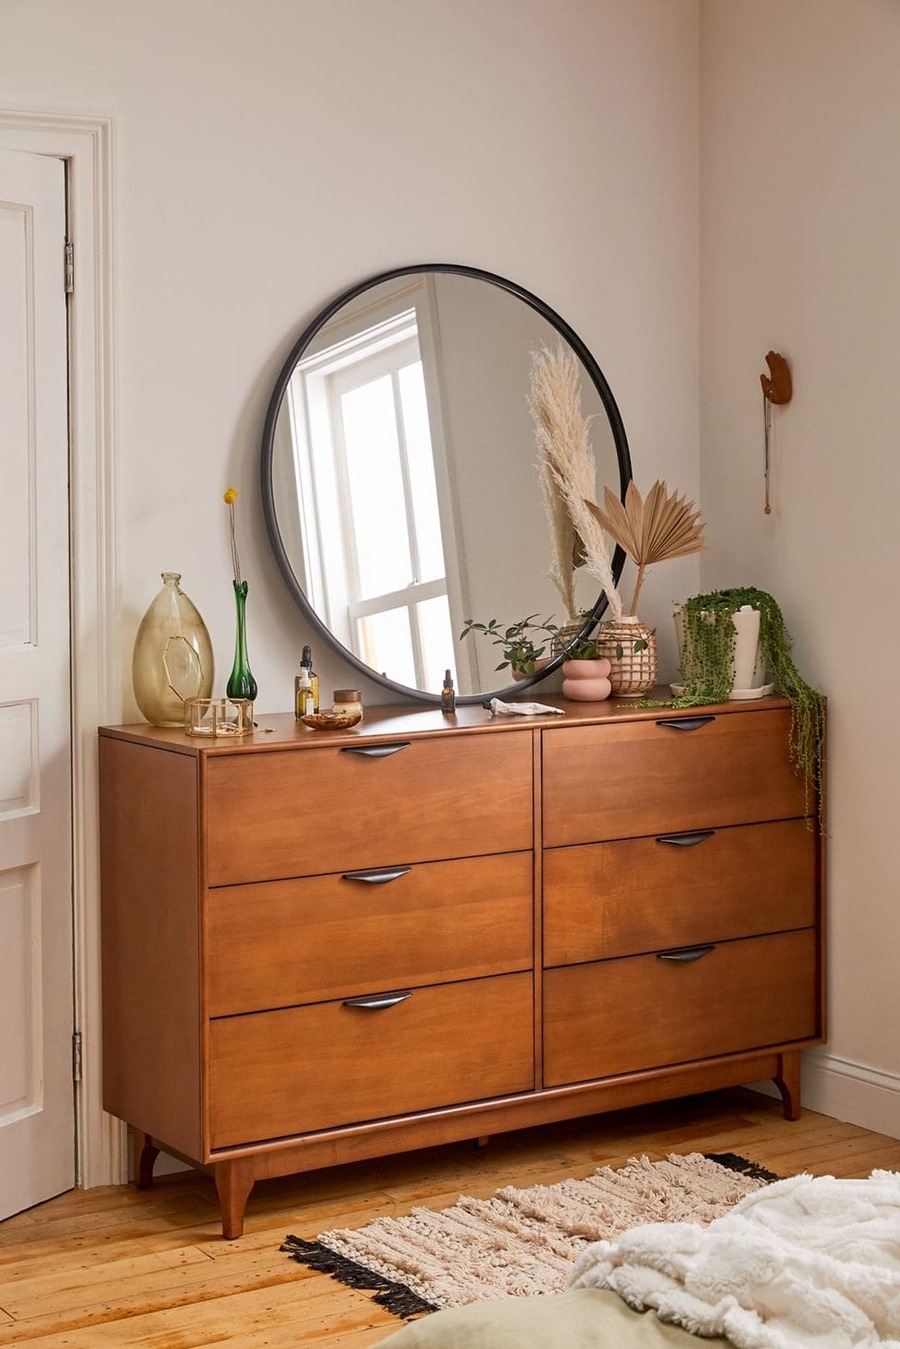 Gran espejo redondo con marco negro sobre una cómoda de madera. Junto al espejo hay frascos, floreros, una planta y otros objetos decorativos. 